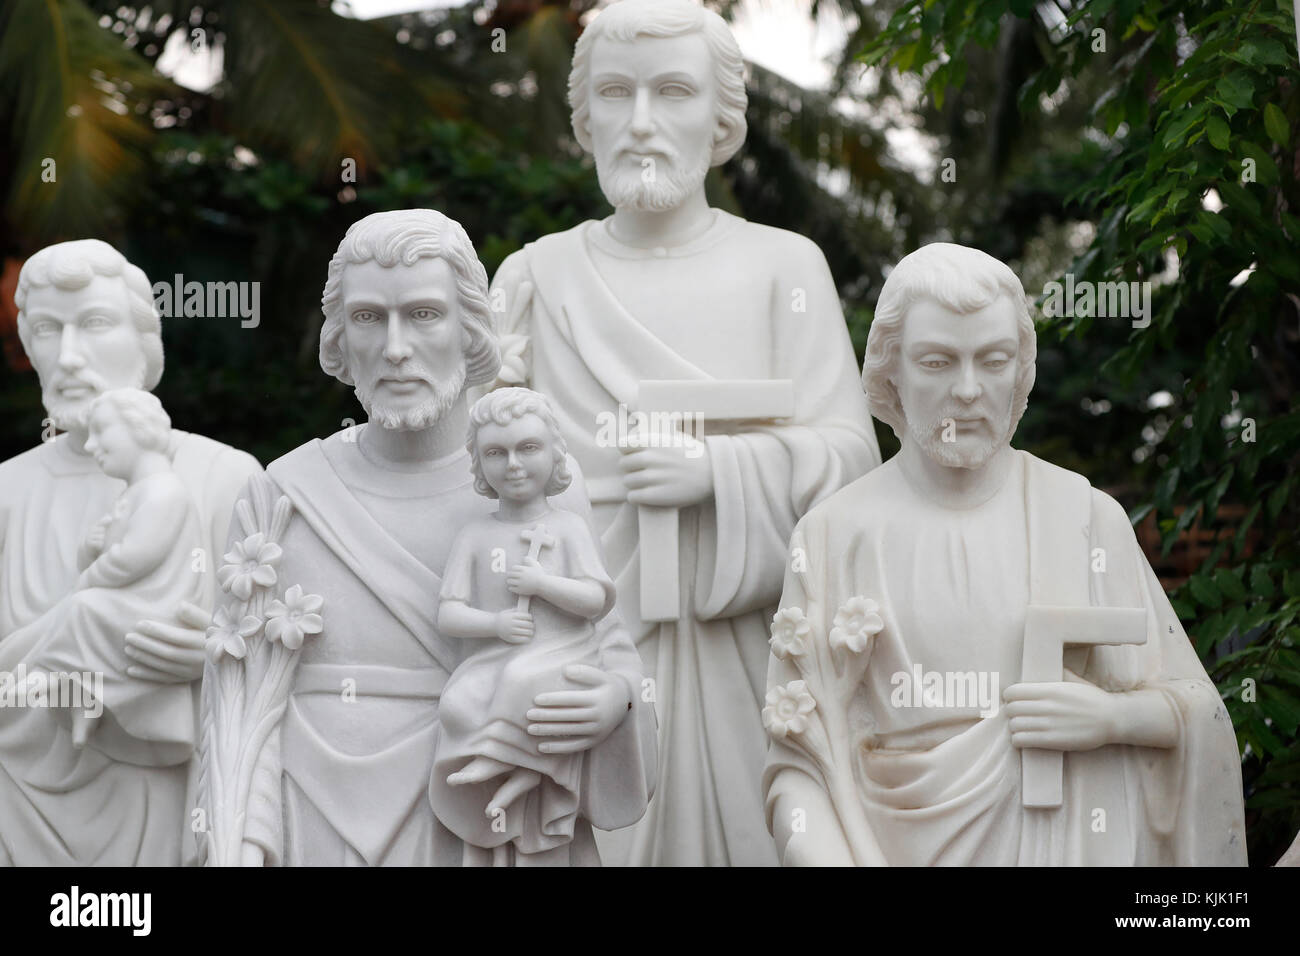 Shop Verkauf von religiösen christlichen Elementen. Der hl. Josef und Jesuskind Marmorstatue. Ho Chi Minh City. Vietnam. Stockfoto